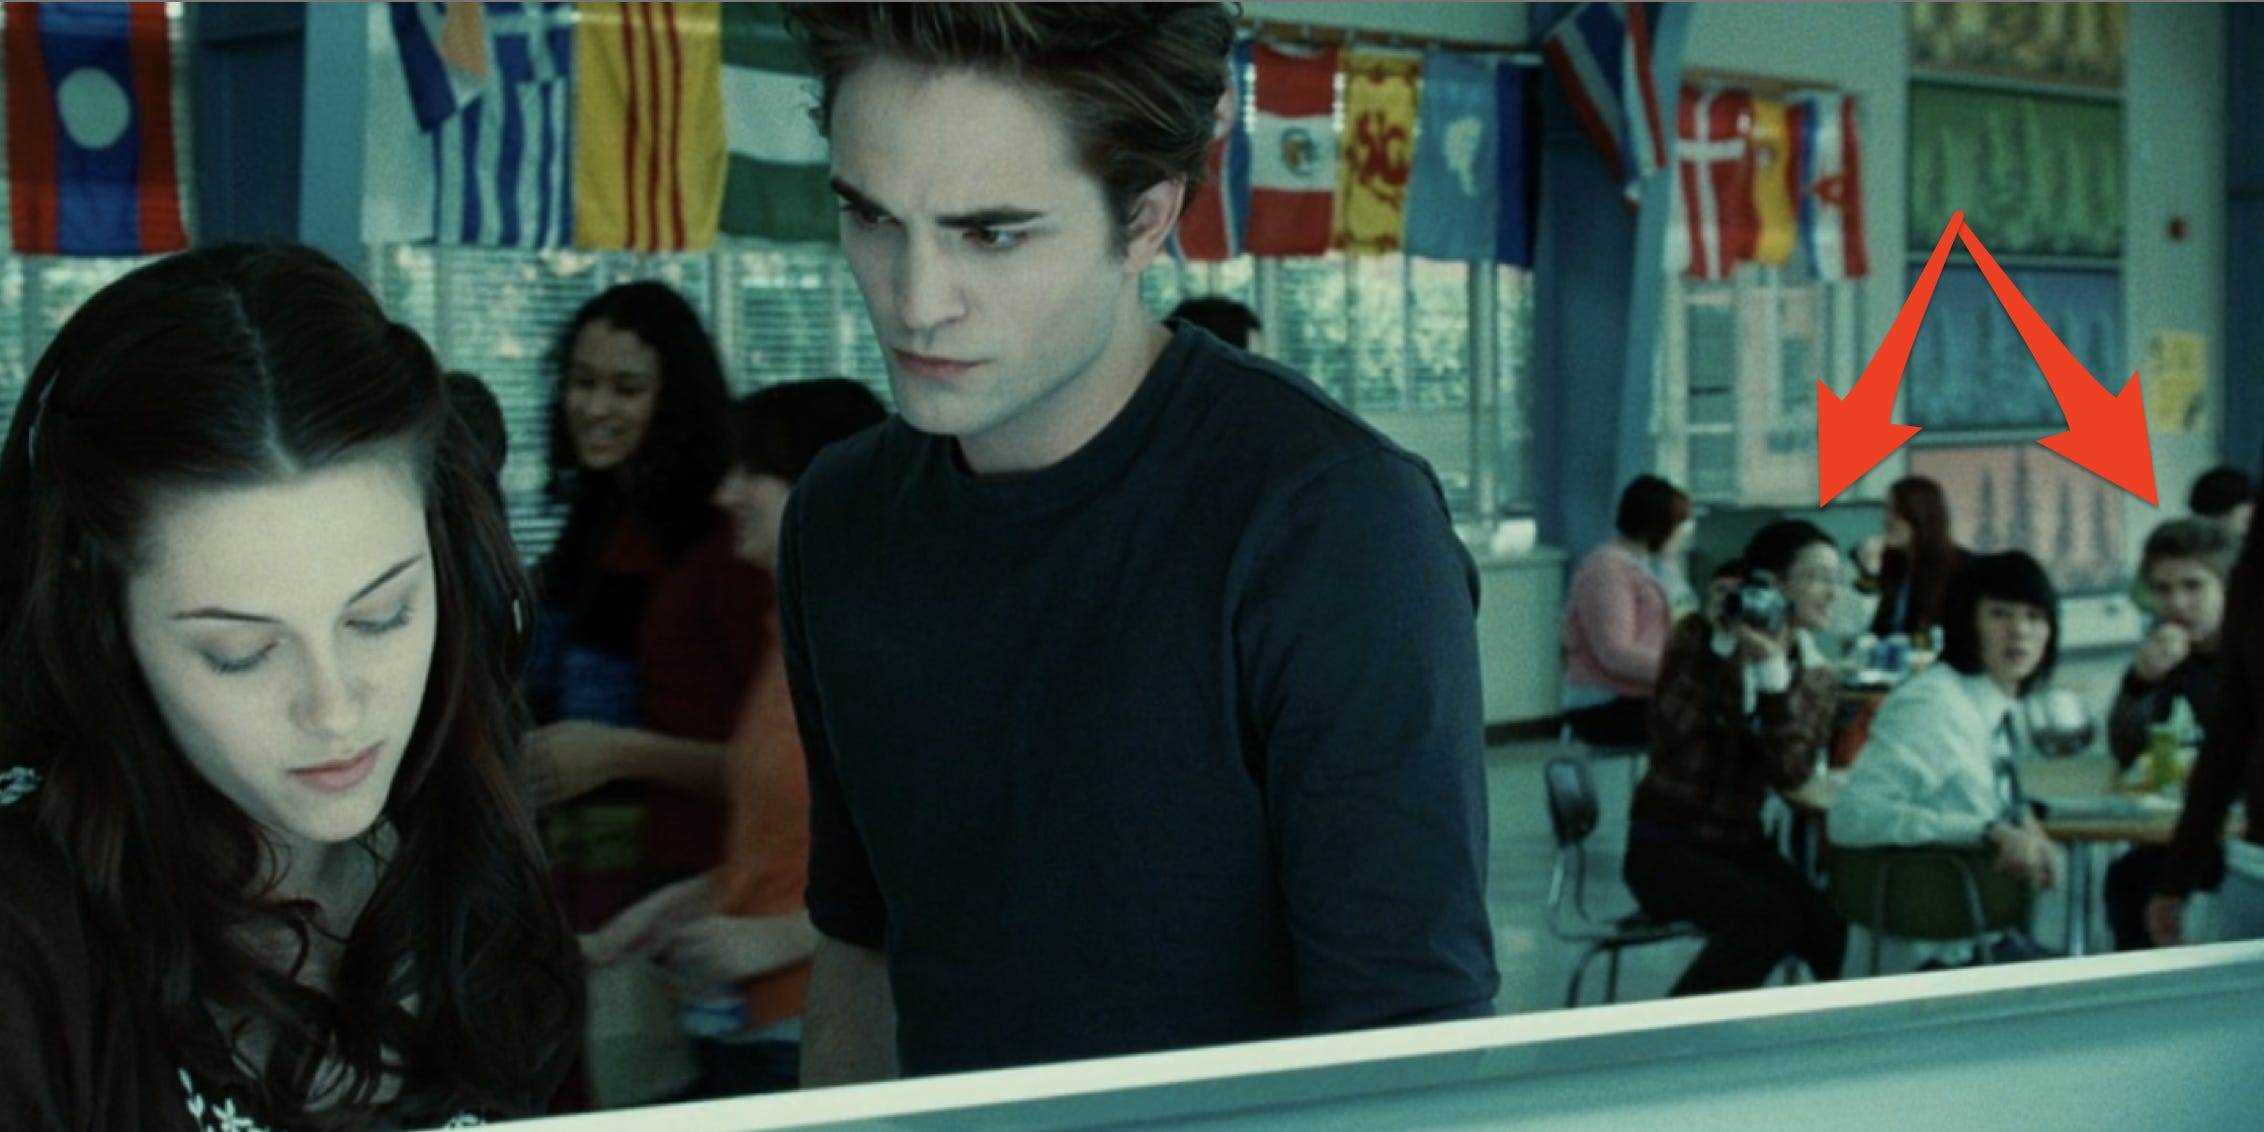 Bella und Edward unterhalten sich in der Mittagsschlange mit drei ihrer Freunde, die im Hintergrund an einem Tisch sitzen und sie anstarren